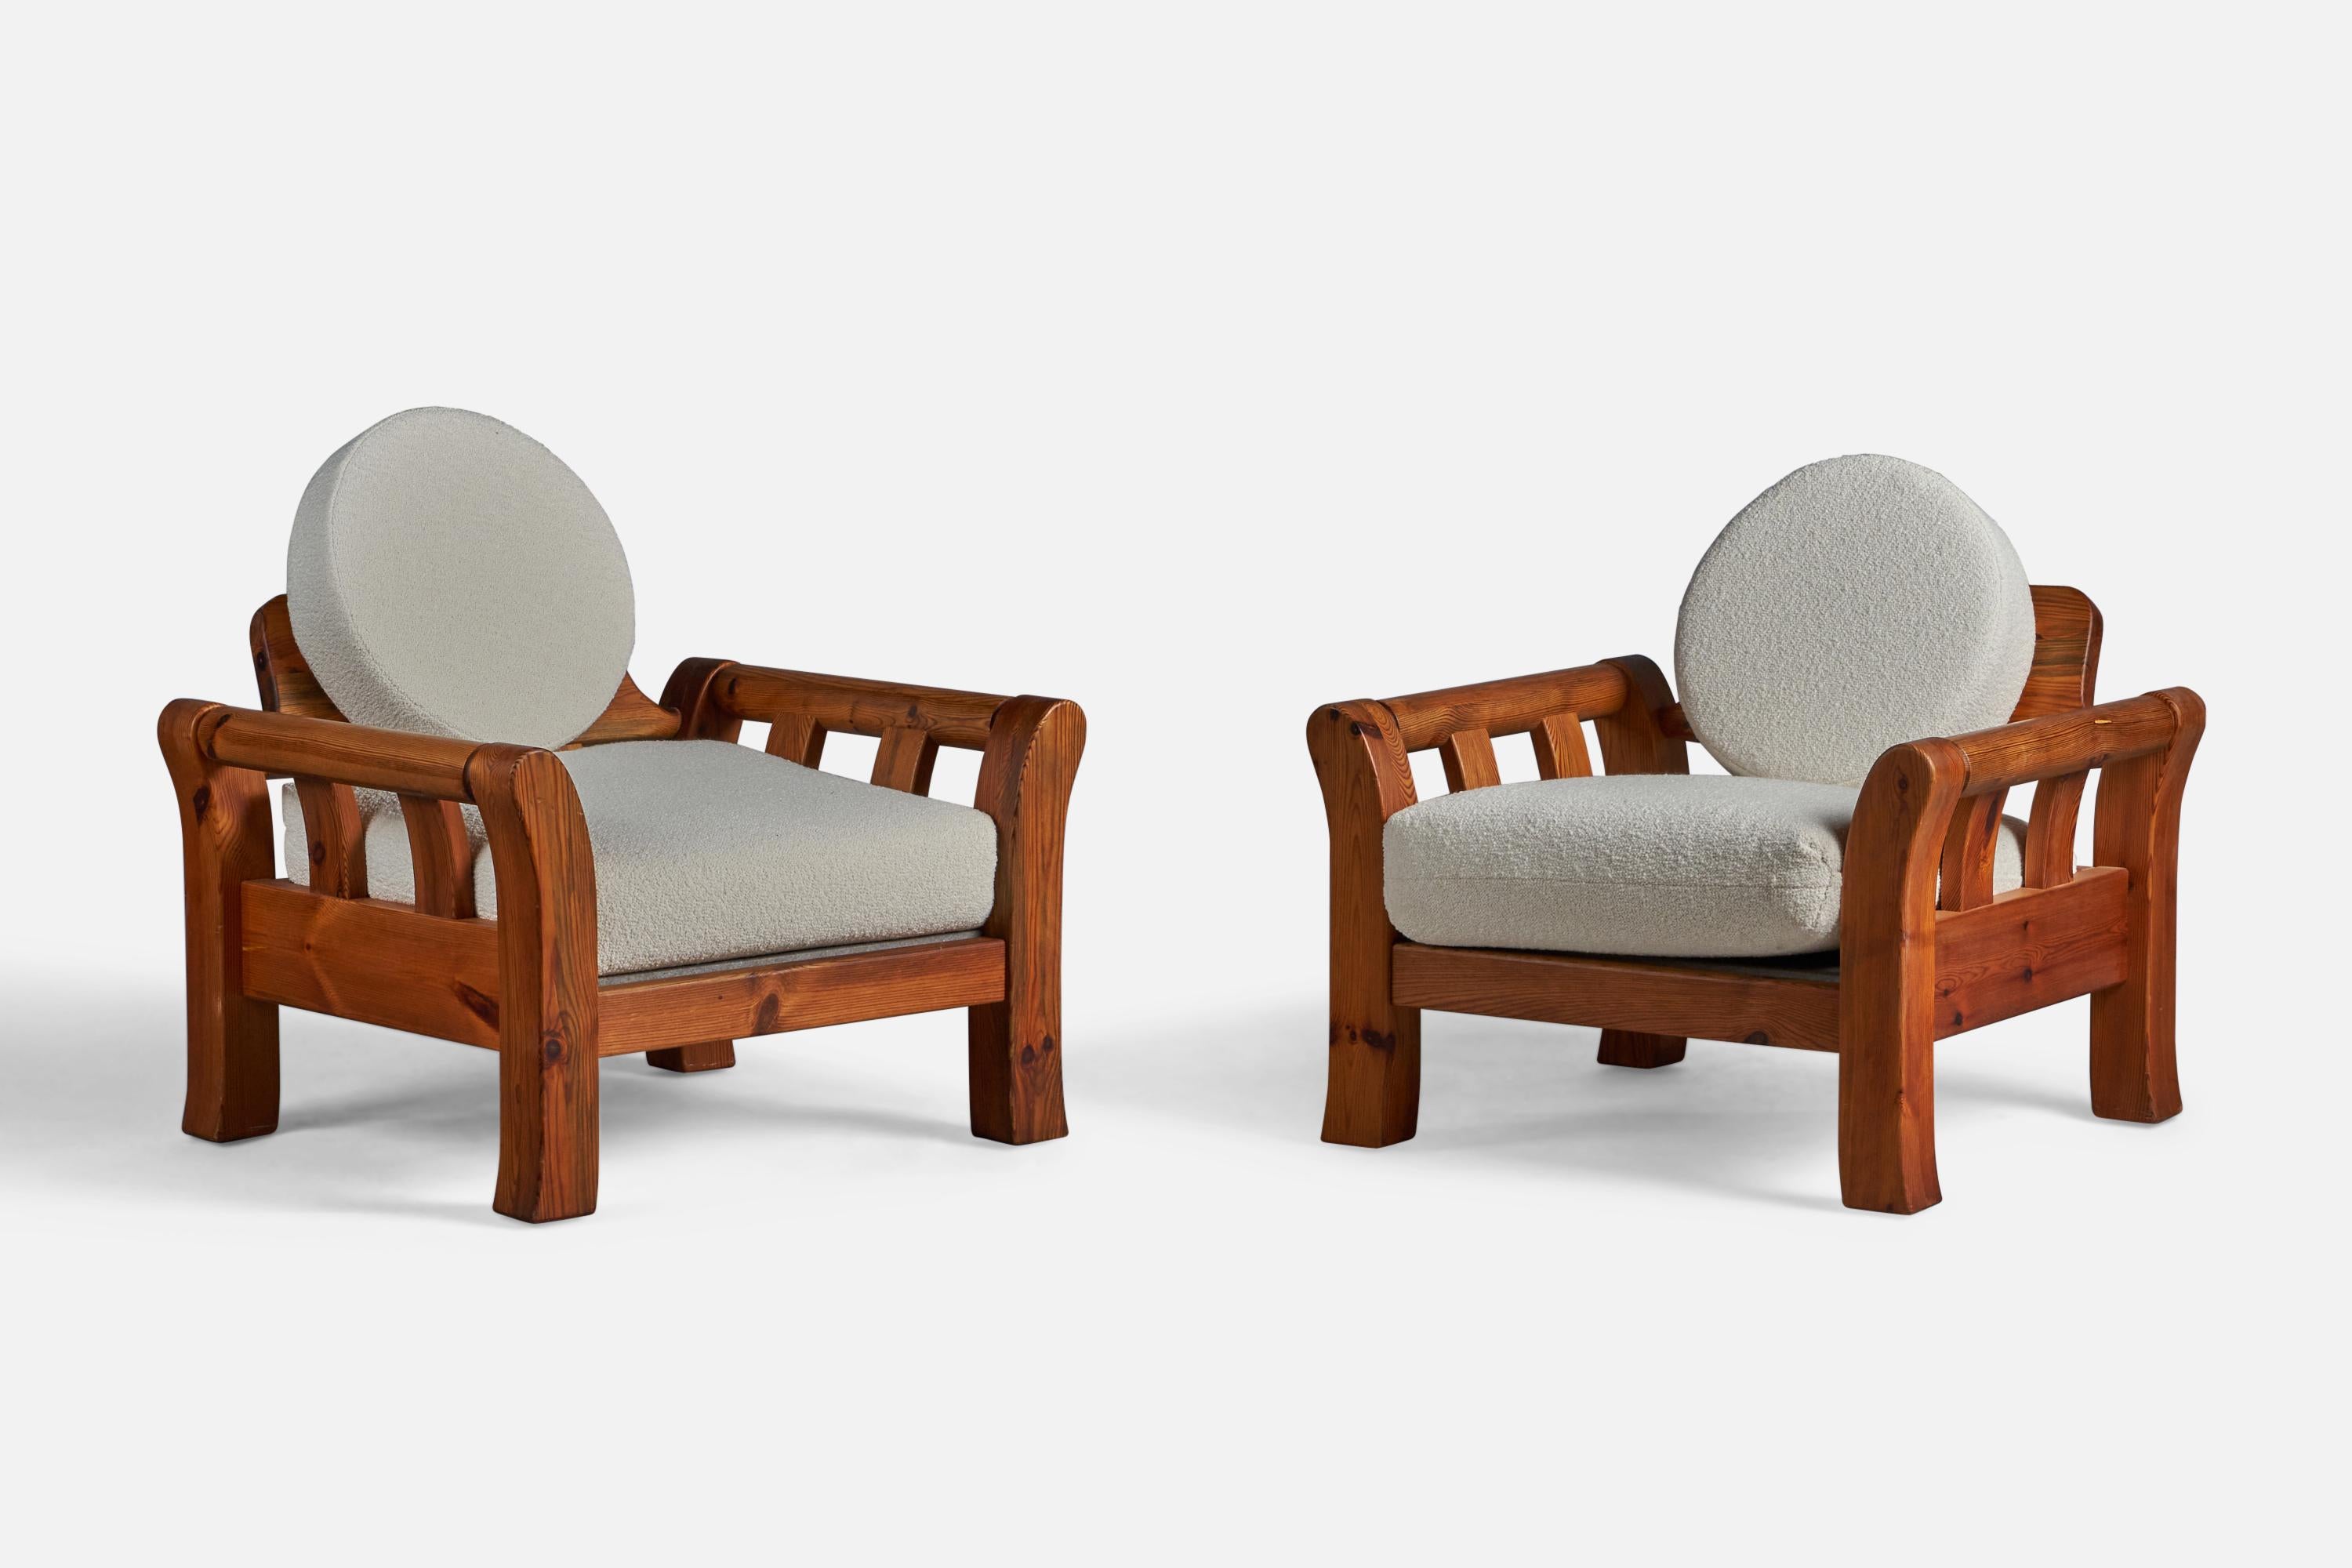 Ein Paar Sessel aus massivem Kiefernholz und weißem Bouclé-Stoff, entworfen und hergestellt in Dänemark, 1960er Jahre.

16